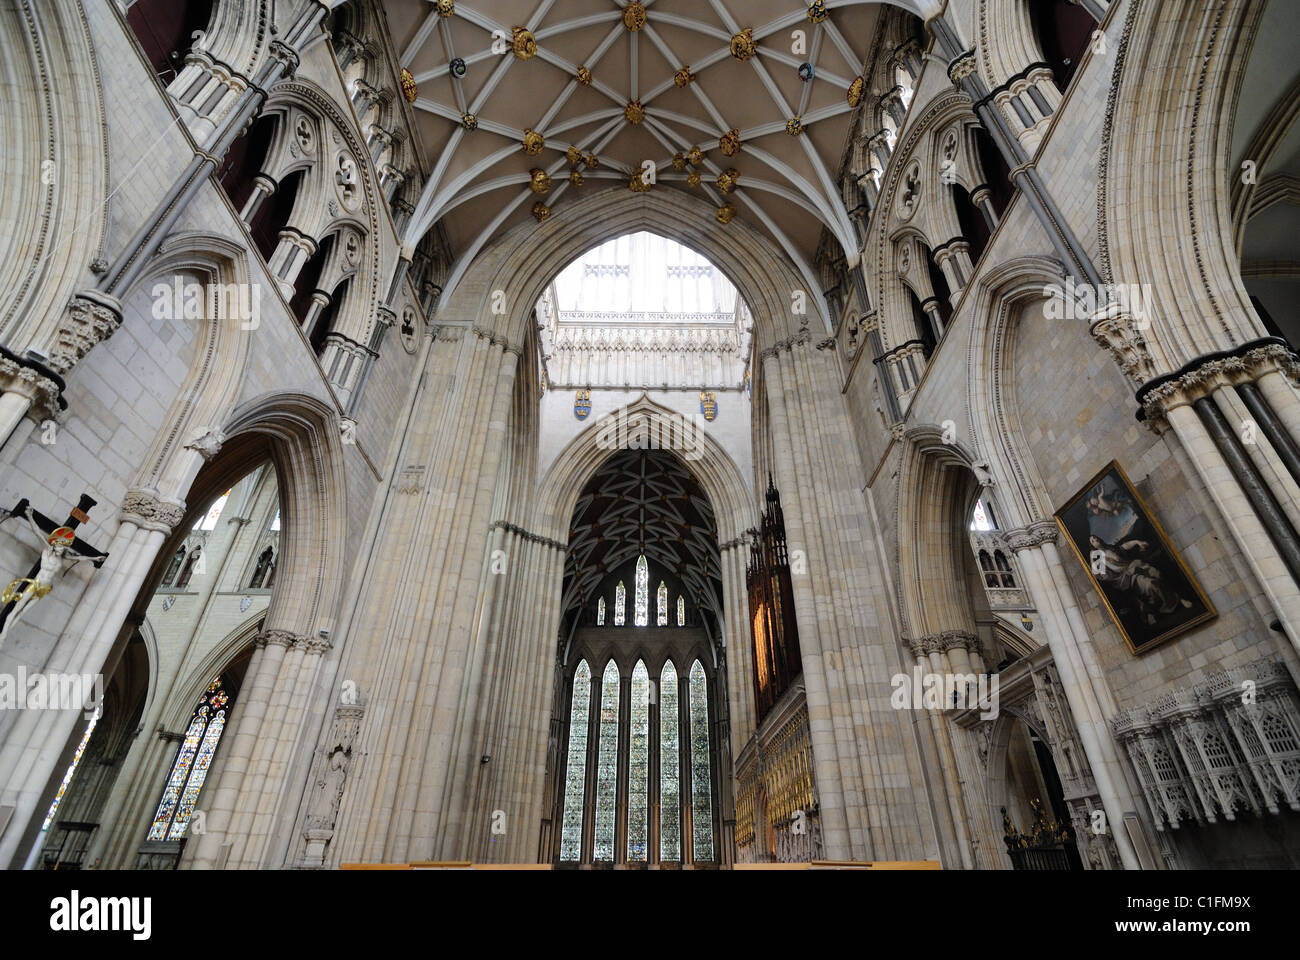 Innere des York Minster, ein Wahrzeichen Kathedrale in York, England. Stockfoto